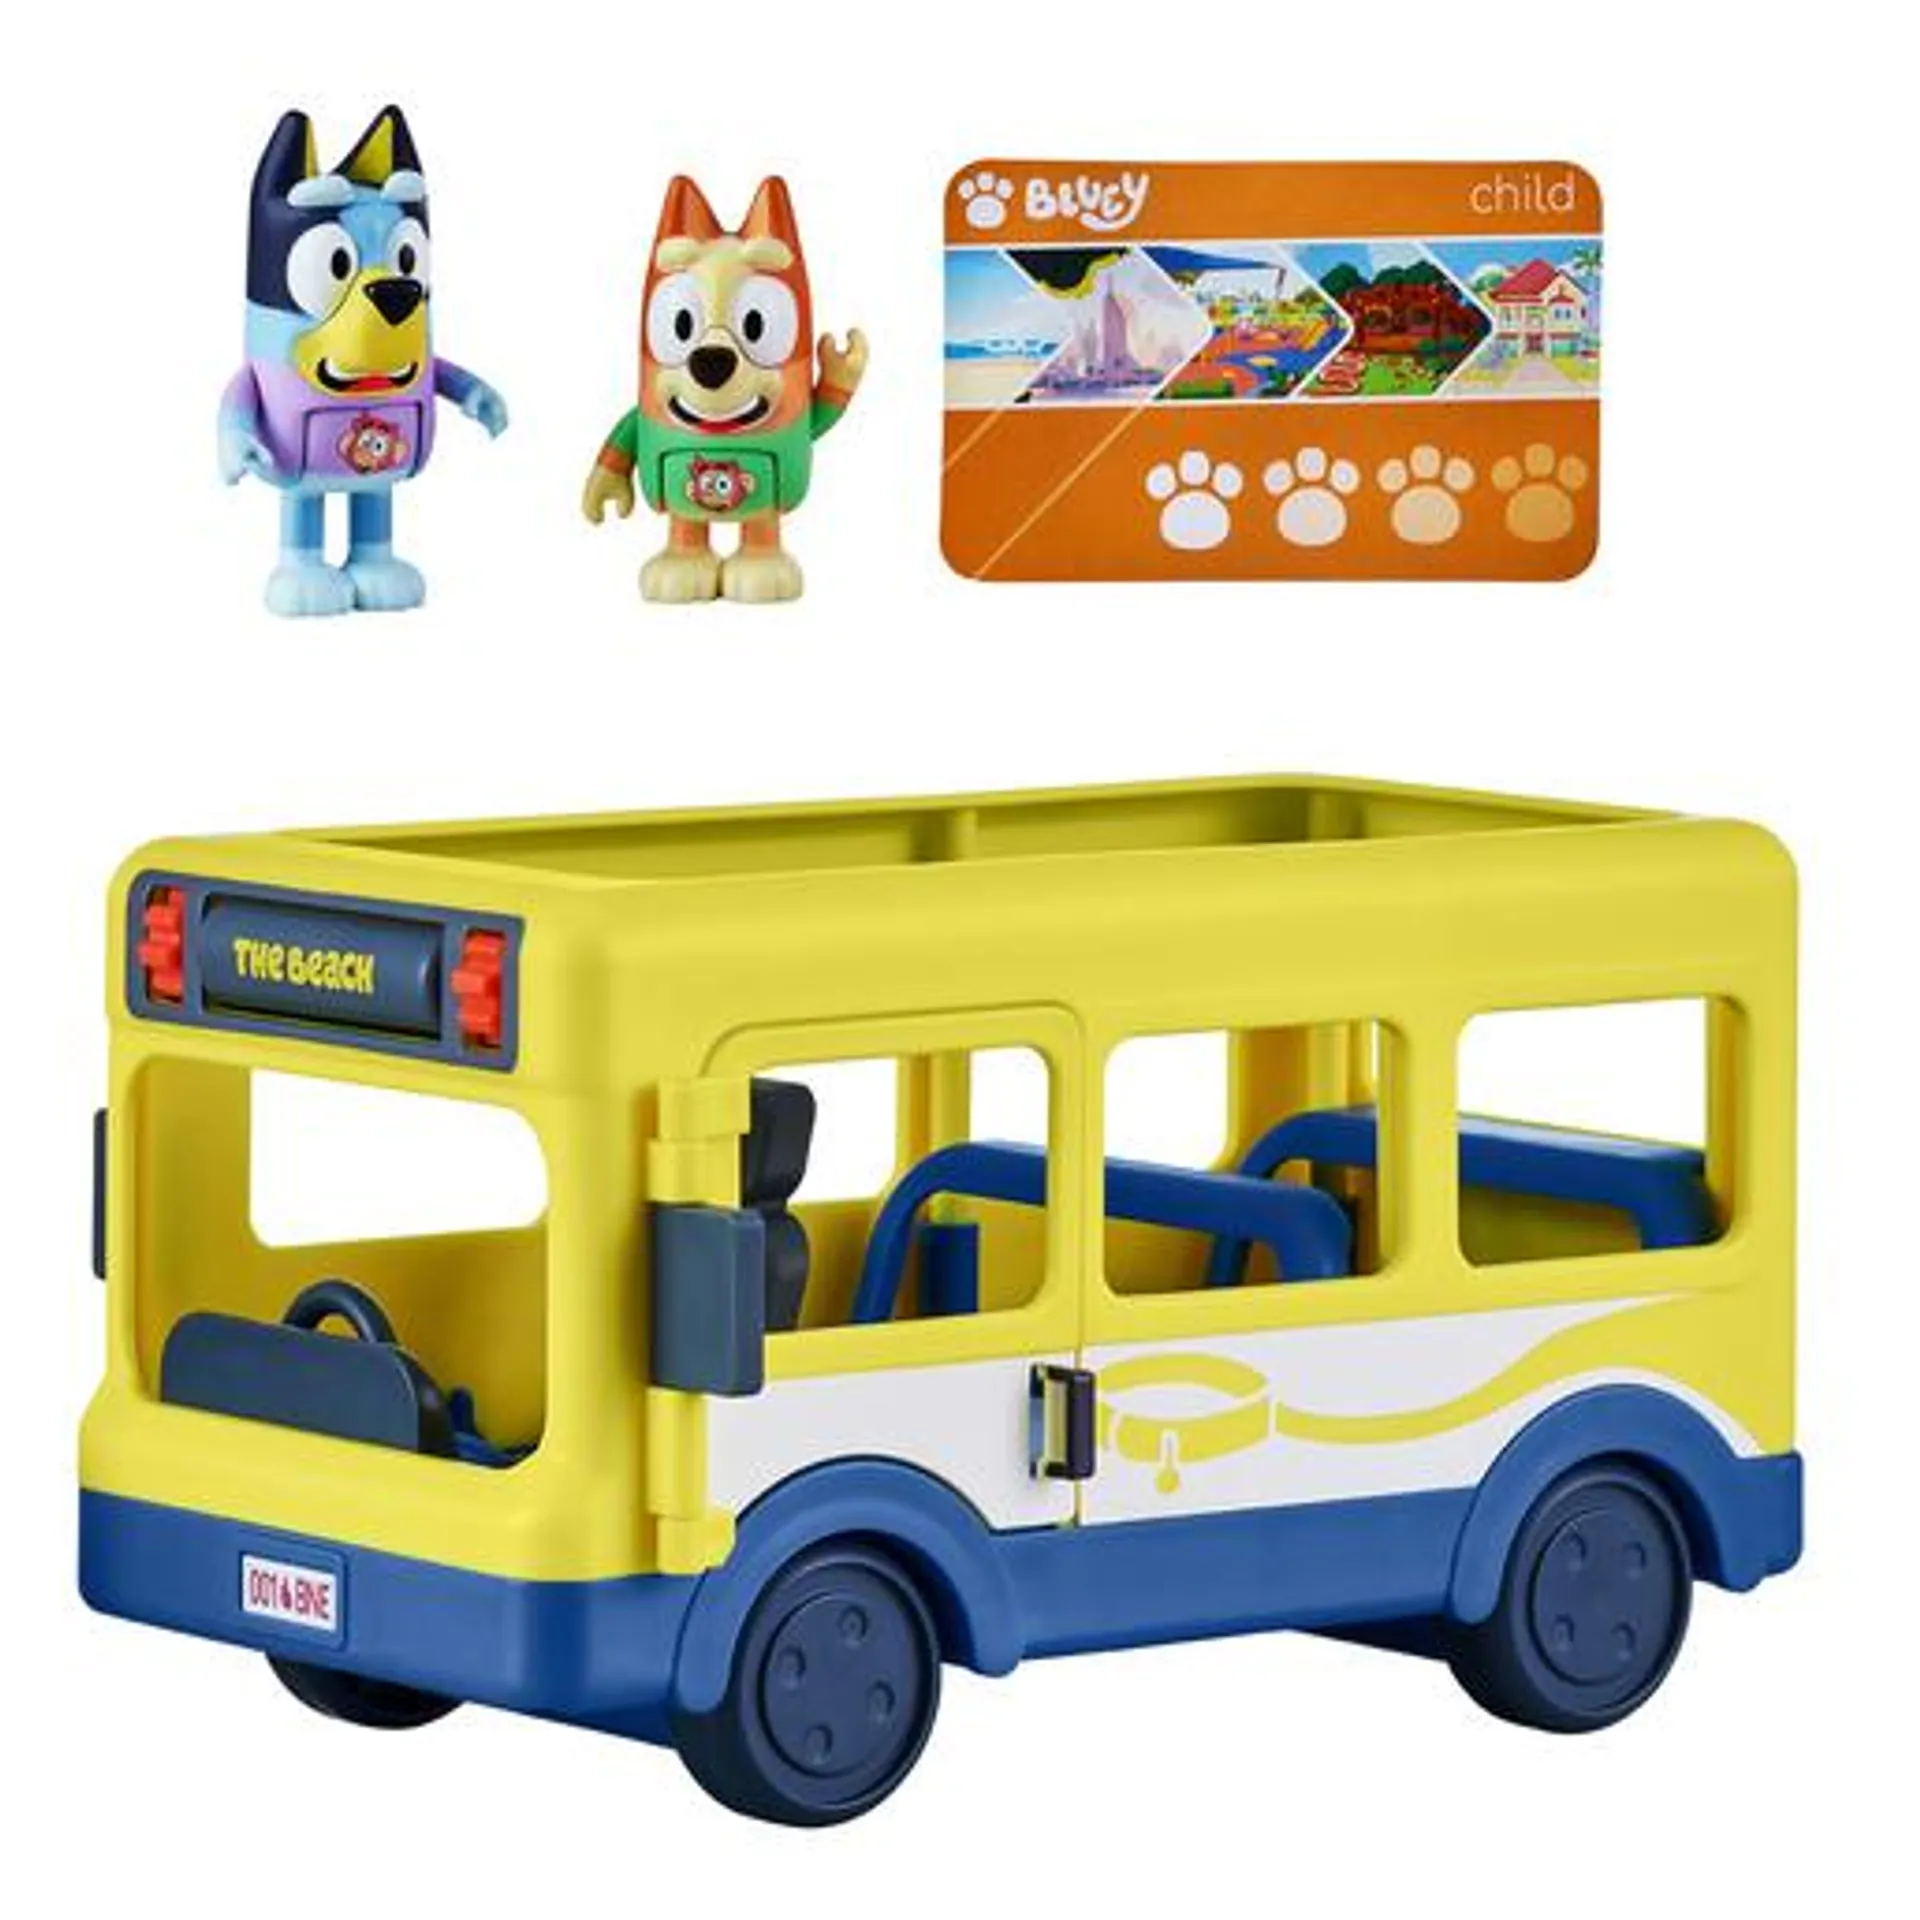 Bluey Bus Playset with Bluey and Bingo Figures